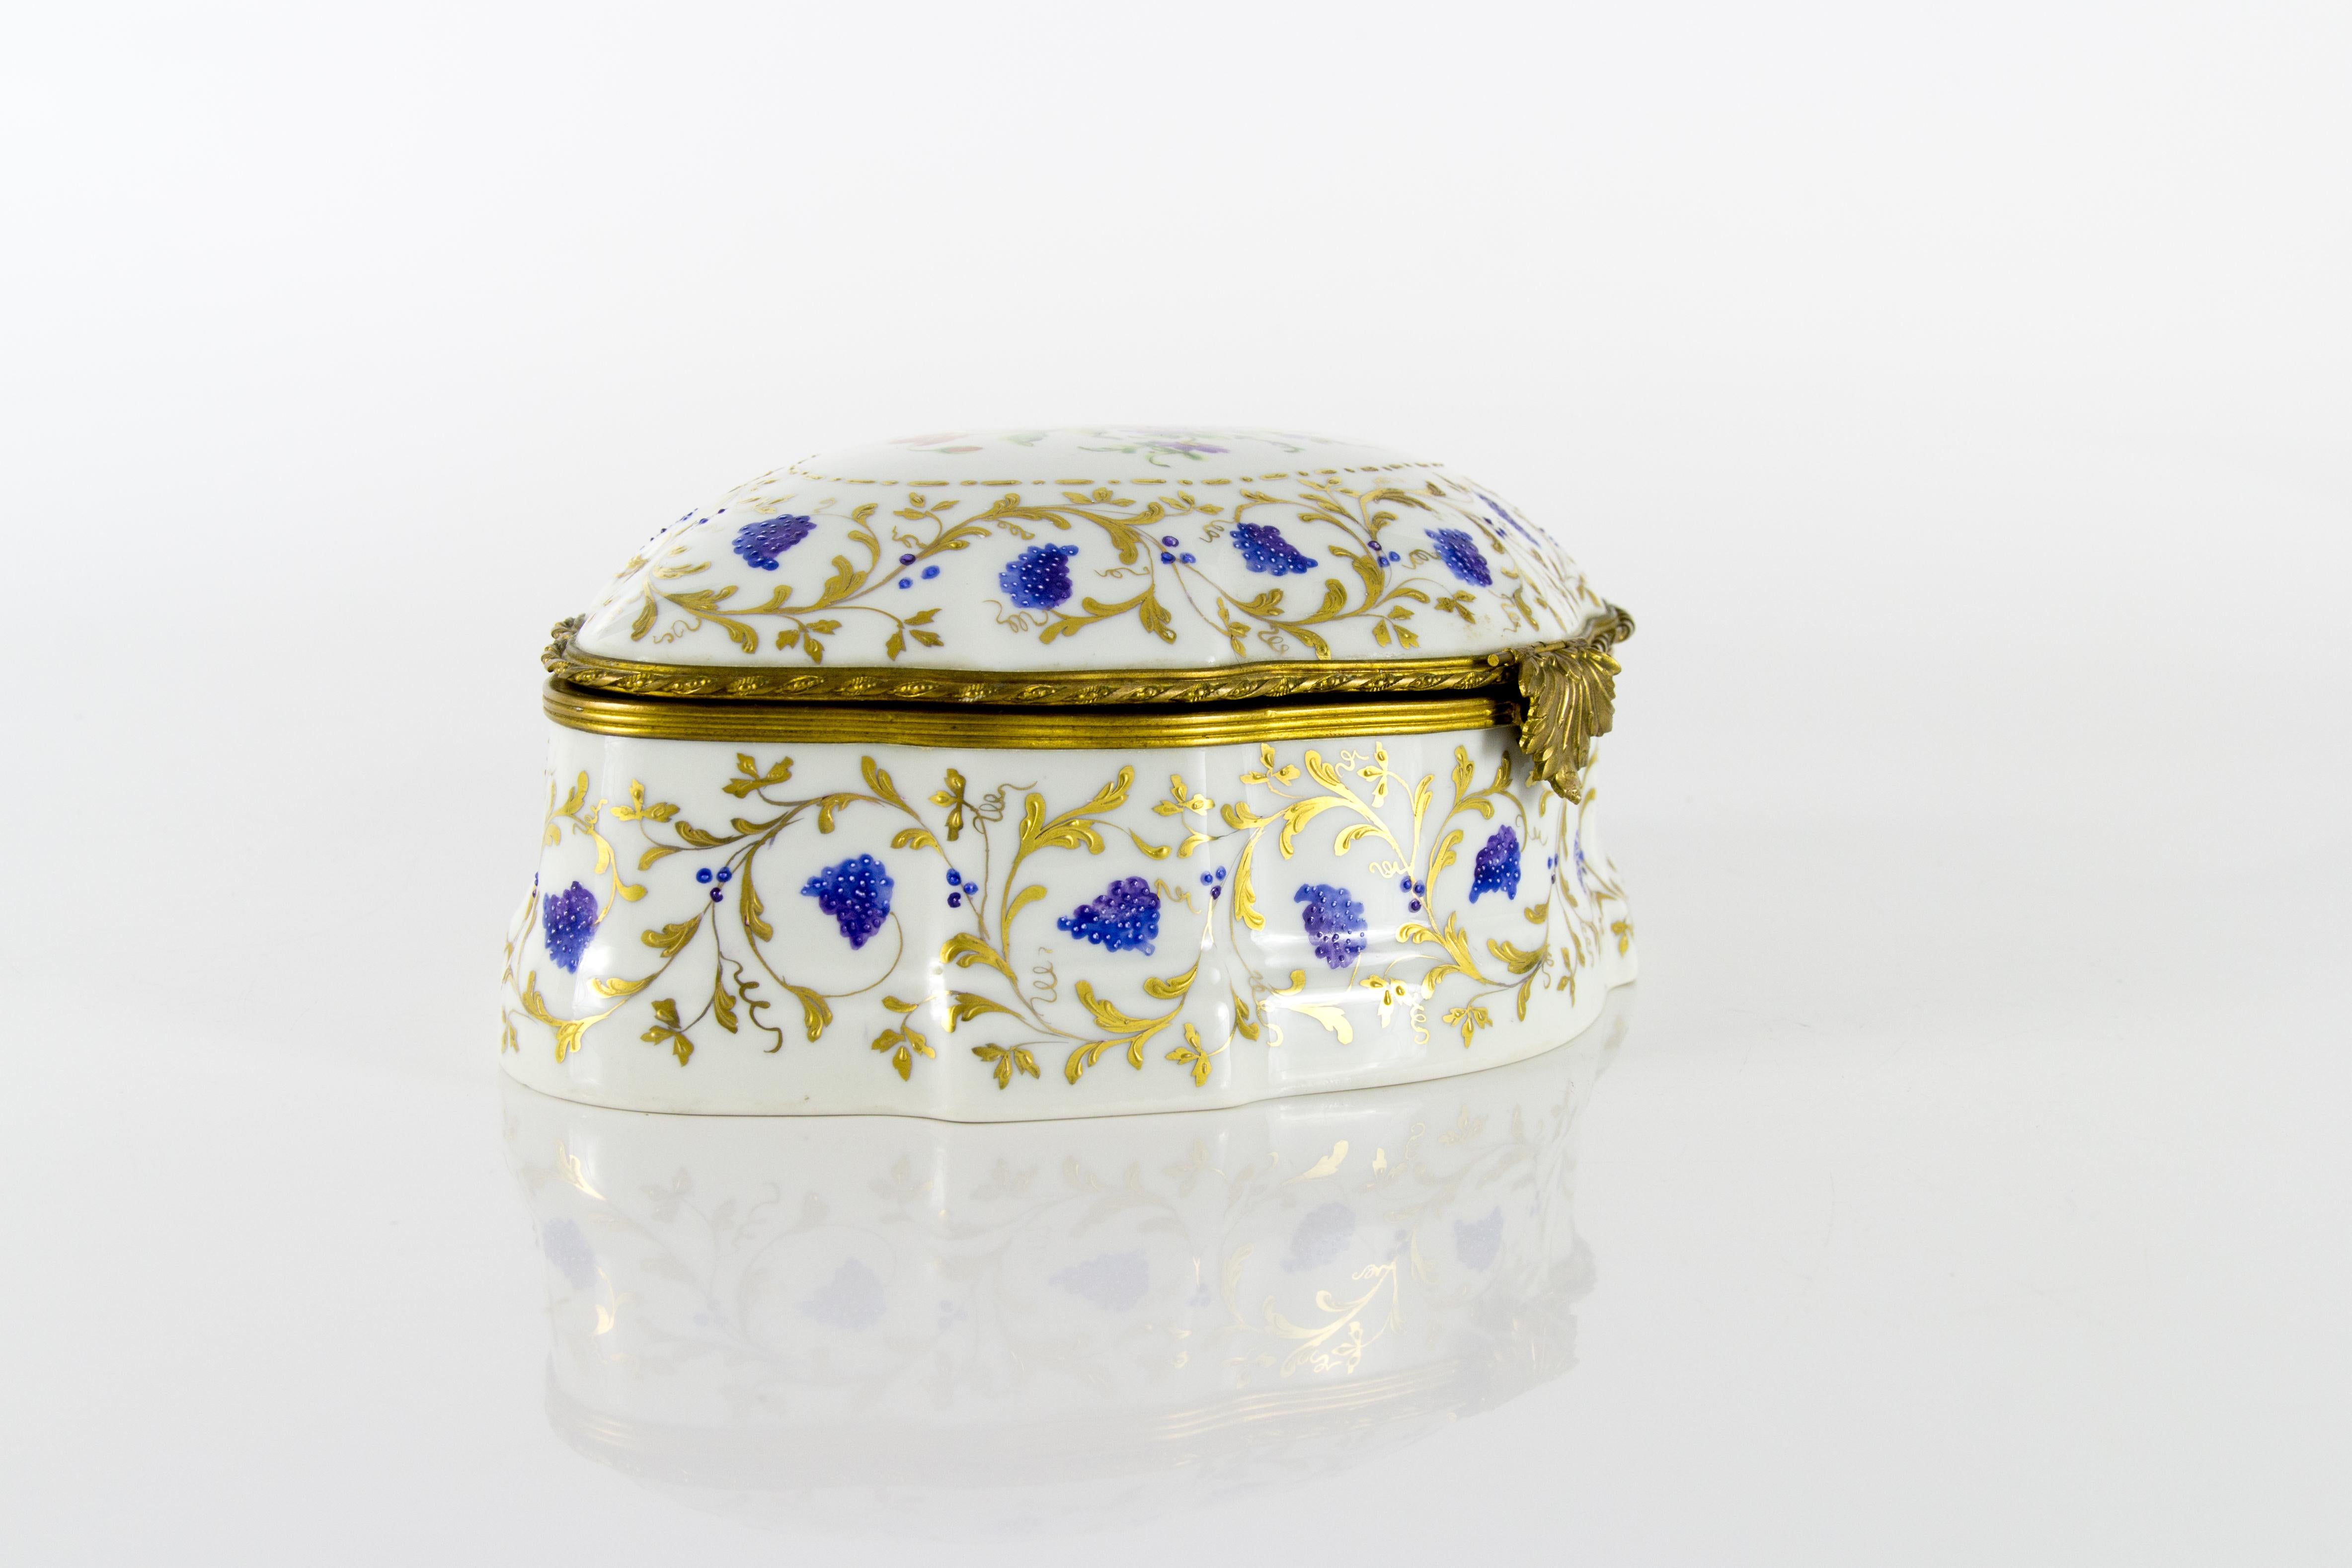 Une grande et magnifique boîte à bijoux en porcelaine peinte à la main de l'Atelier Camille Le Tallec de 1973 avec une monture en laiton orné. 
Les marques sur le fond indiquent 